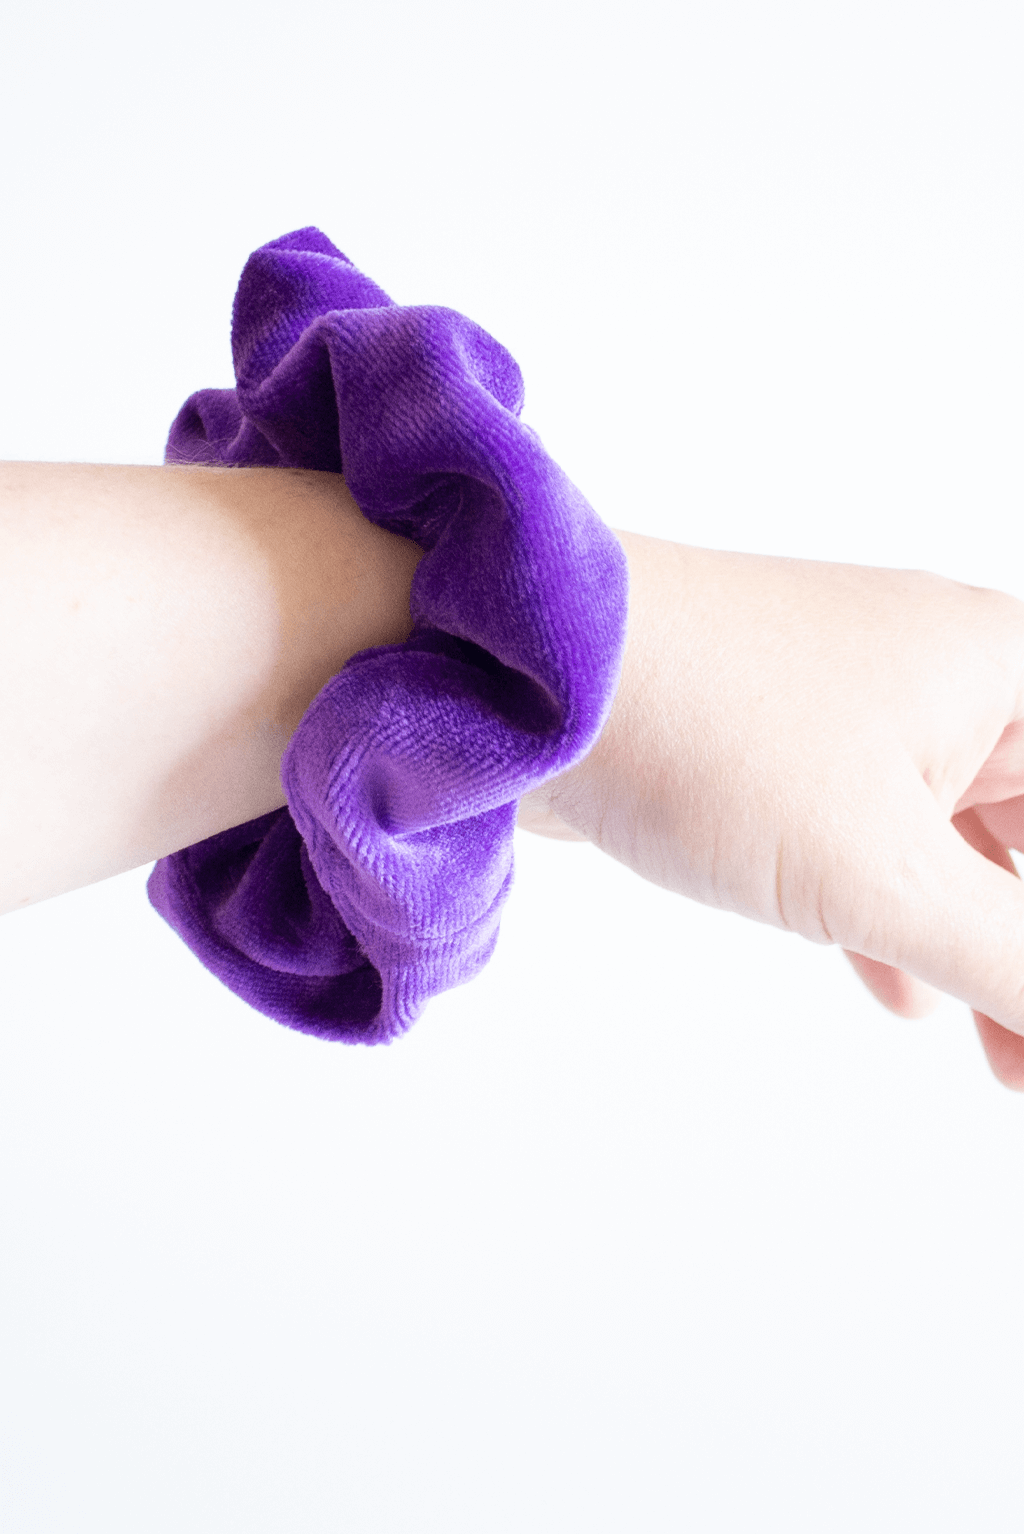 Purple velvet scrunchie worn on wrist.